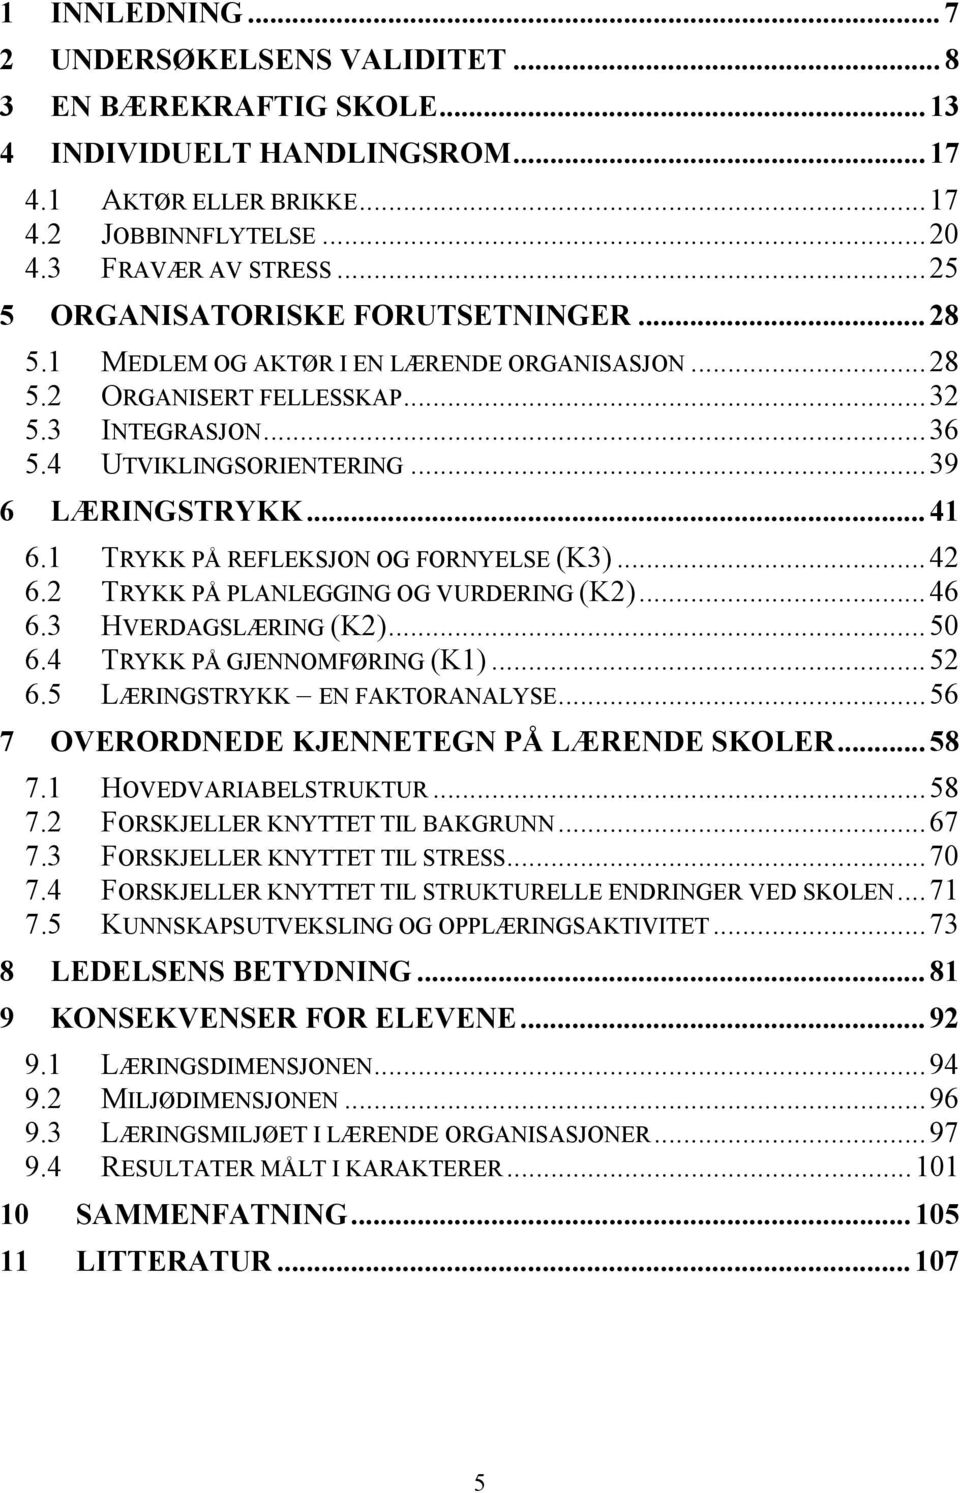 1 TRYKK PÅ REFLEKSJON OG FORNYELSE (K3)...42 6.2 TRYKK PÅ PLANLEGGING OG VURDERING (K2)...46 6.3 HVERDAGSLÆRING (K2)...50 6.4 TRYKK PÅ GJENNOMFØRING (K1)...52 6.5 LÆRINGSTRYKK EN FAKTORANALYSE.